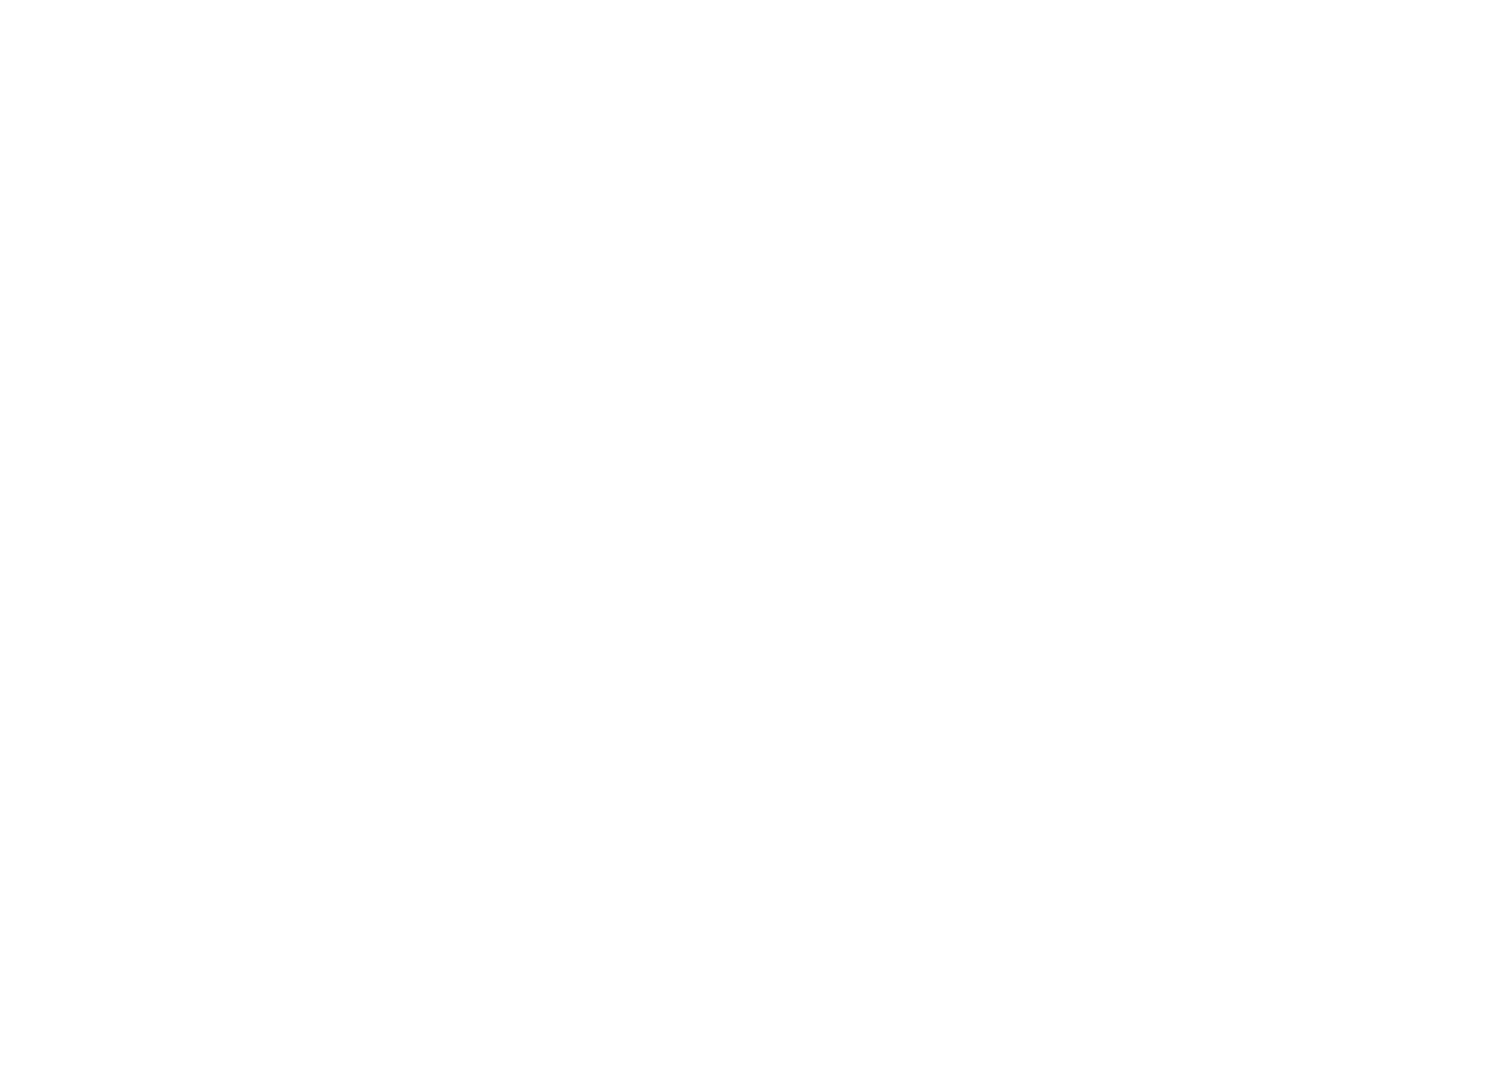 www.inkerscon.com